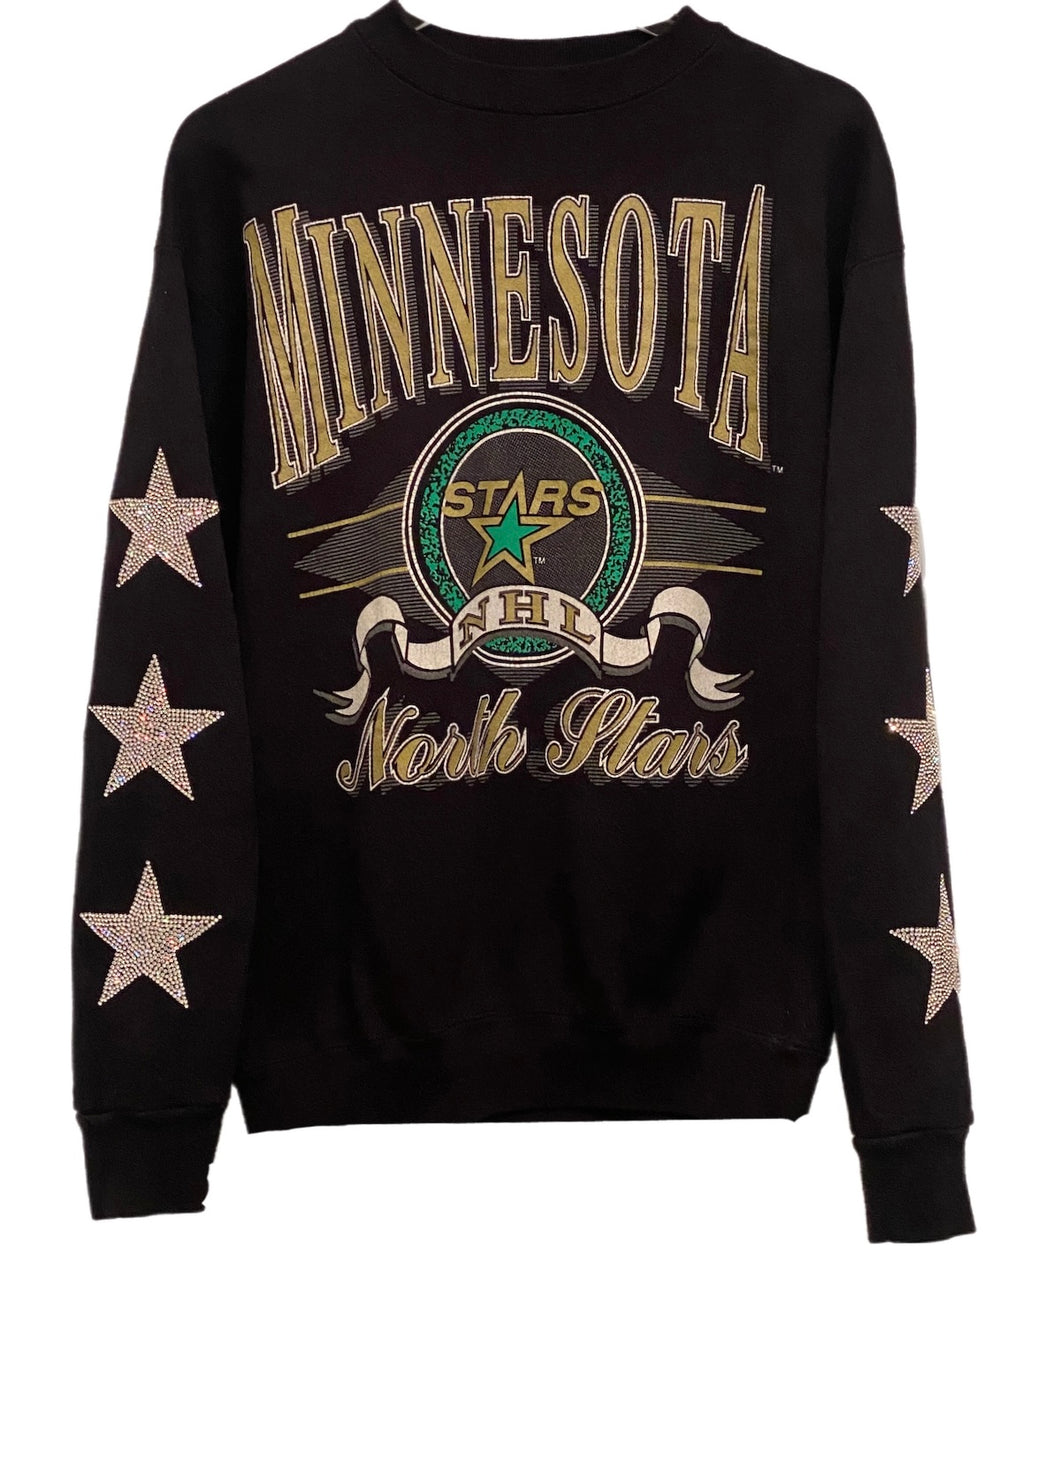 Minnesota North Stars, NHL One of a KIND Vintage Sweatshirt with Three Crystal Stars Design